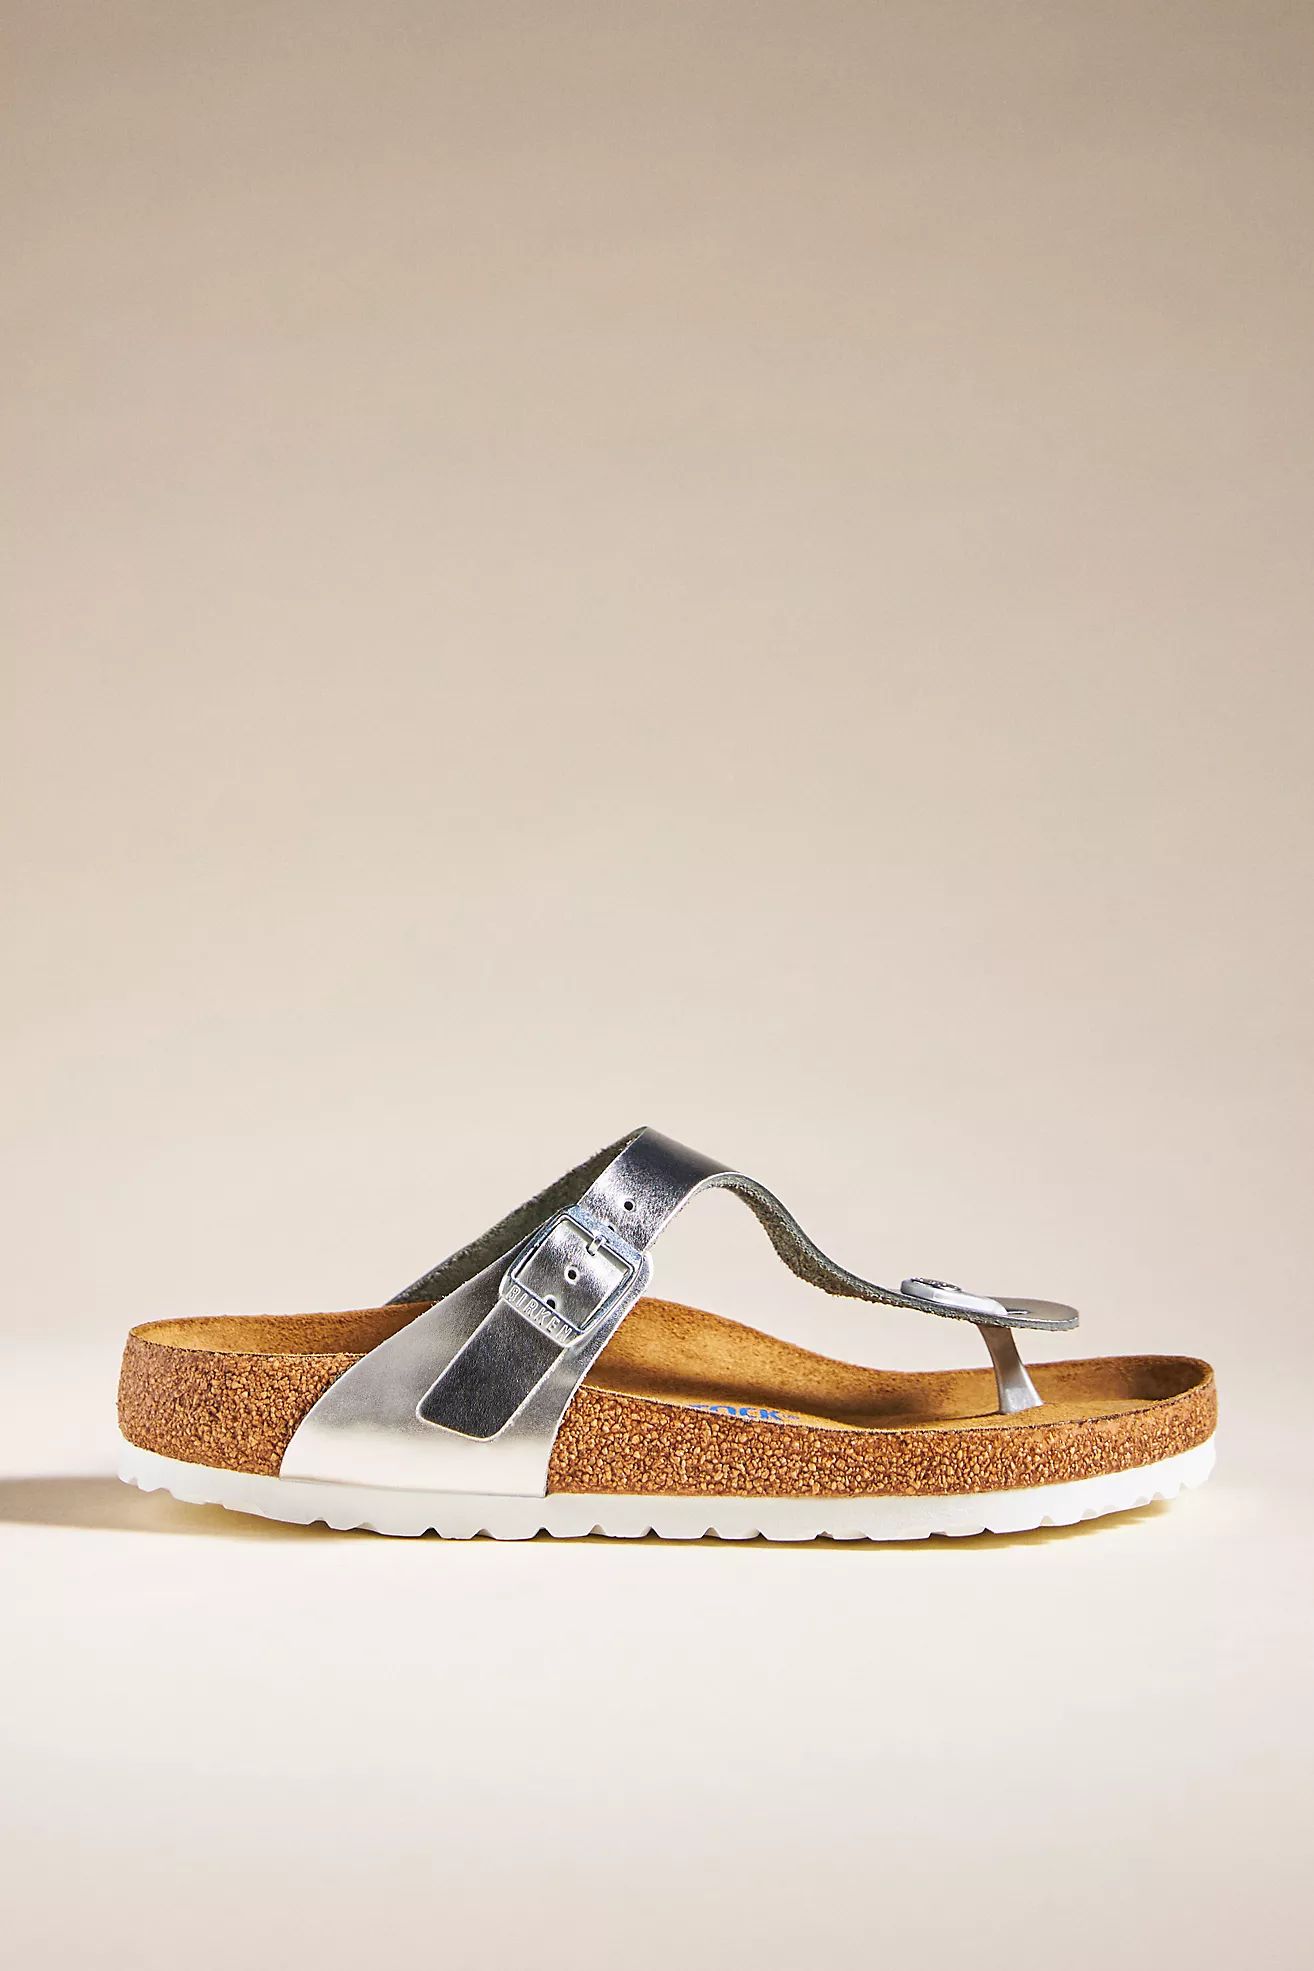 Birkenstock Gizeh Soft Footbed Sandals | Anthropologie (US)